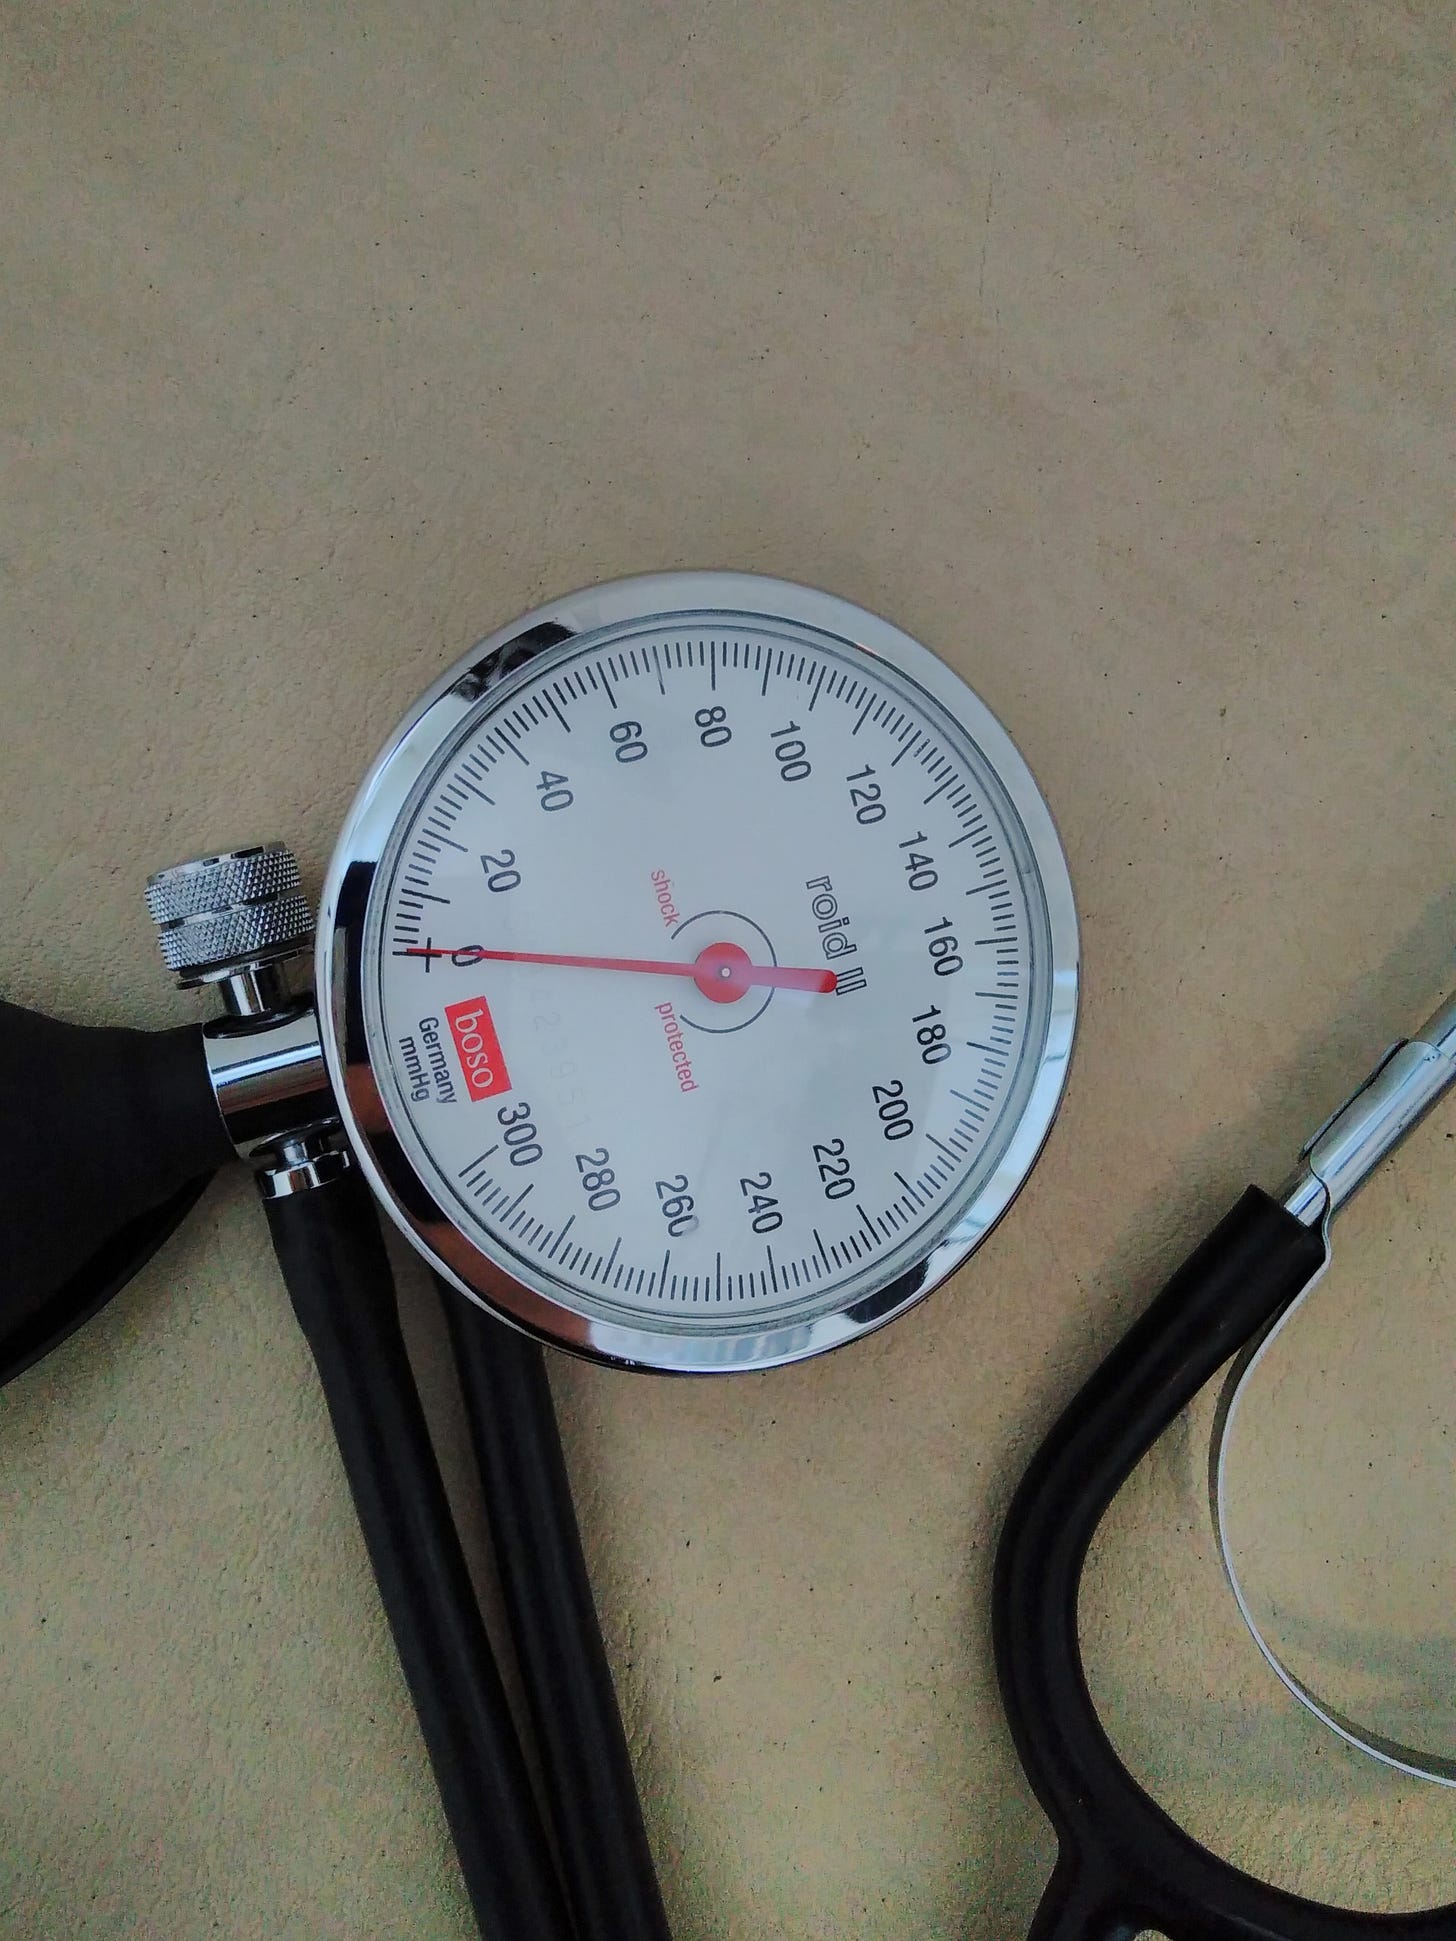 Bild zeigt Teile eines Blutdruckmessgeräts und eines Stethoskops